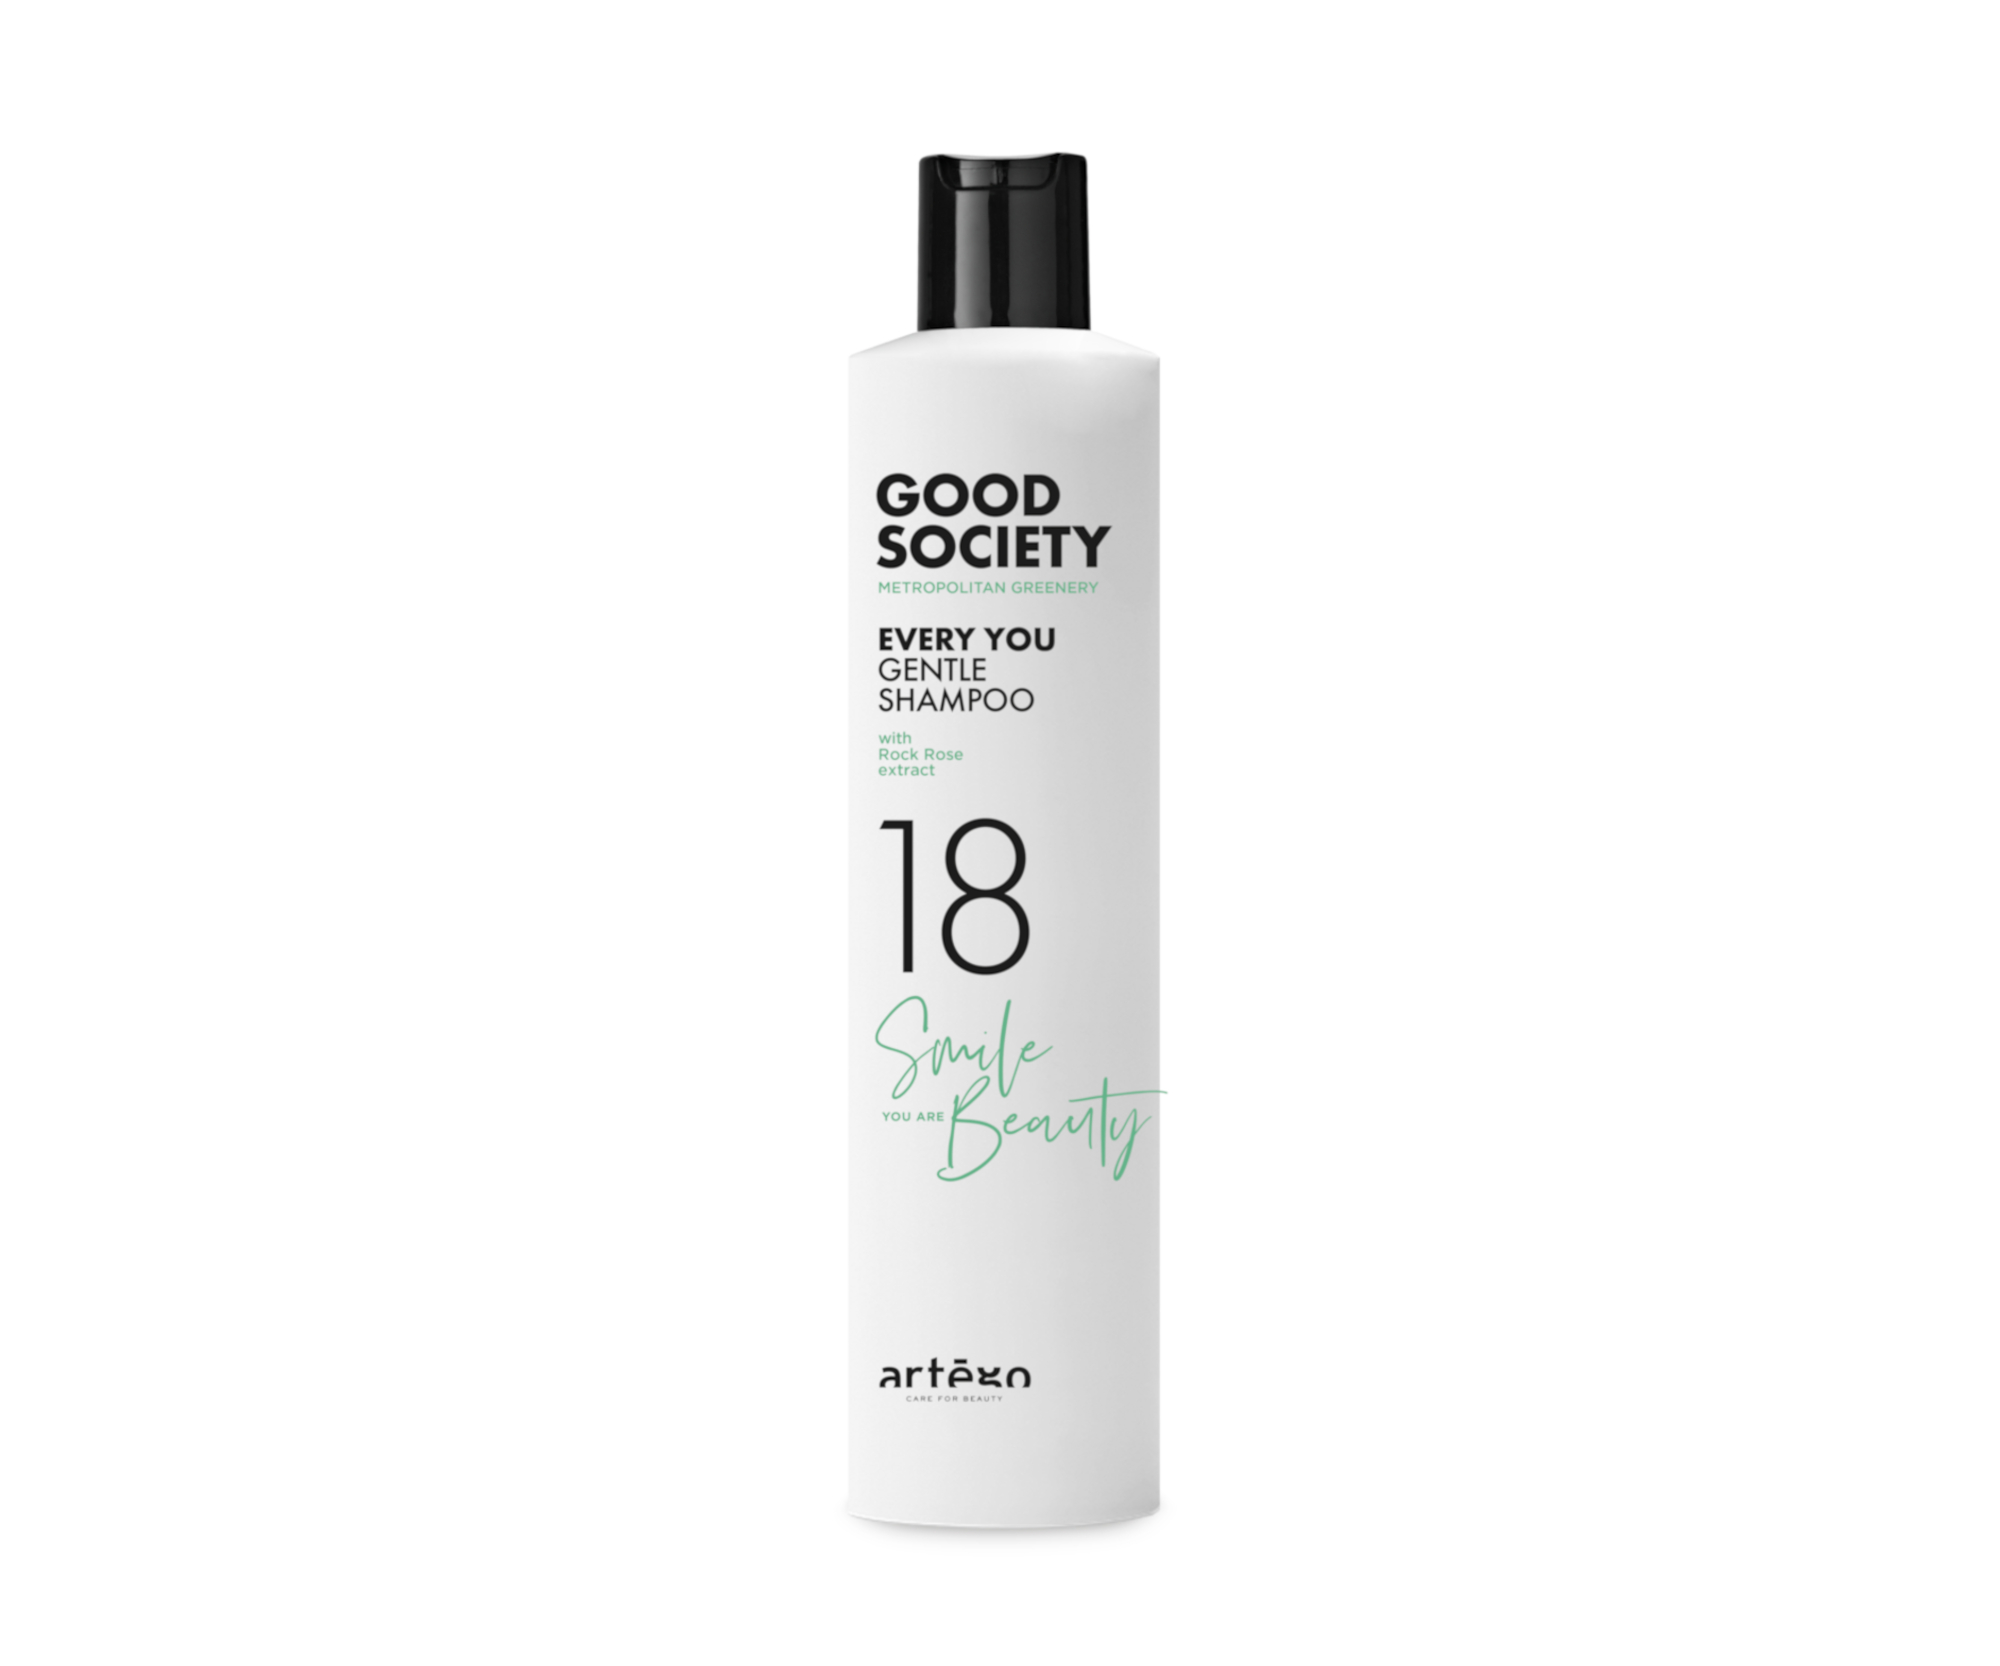 Šampon pro všechny typy vlasů Artégo Good Society 18 Every You - 250 ml (0165917) + dárek zdarma